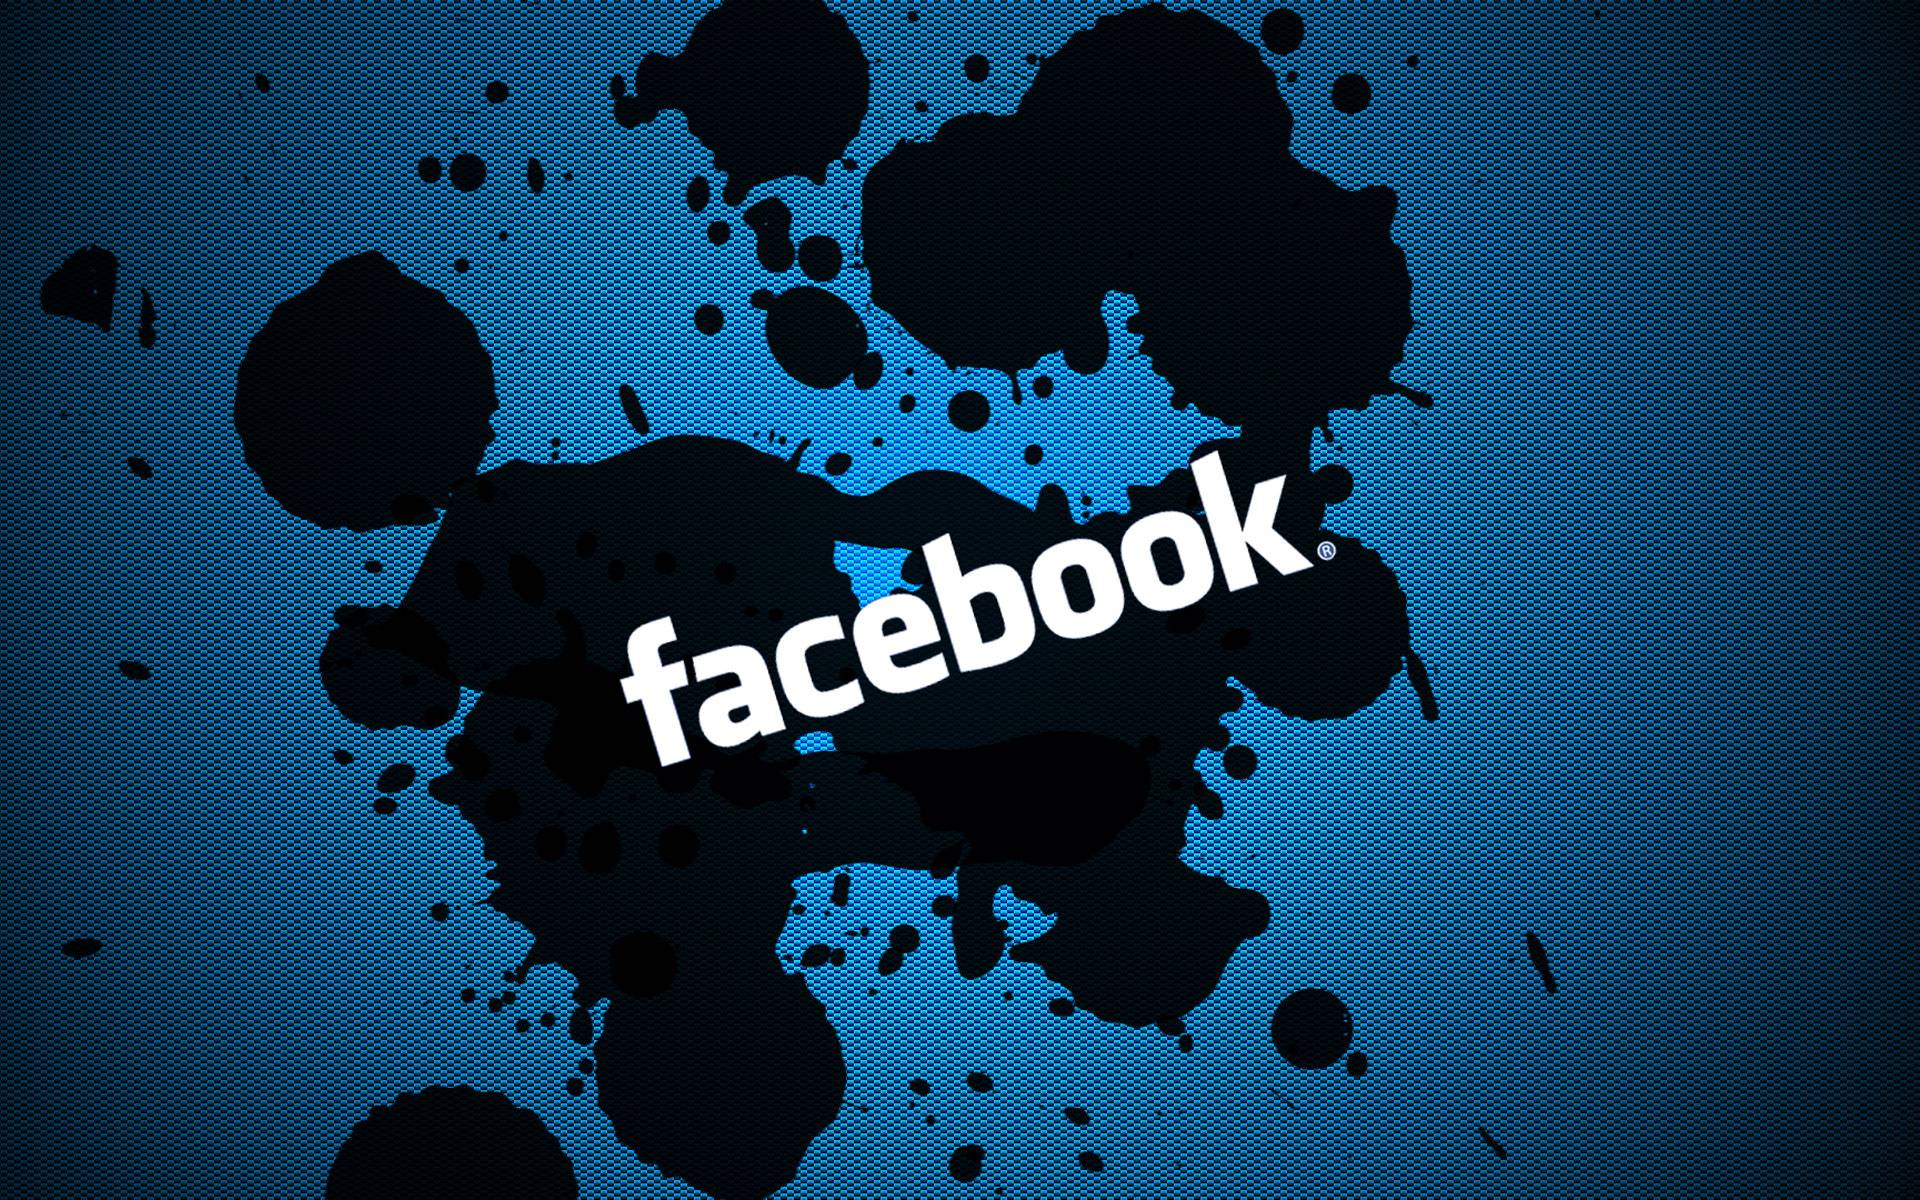 facebook logo wallpaper